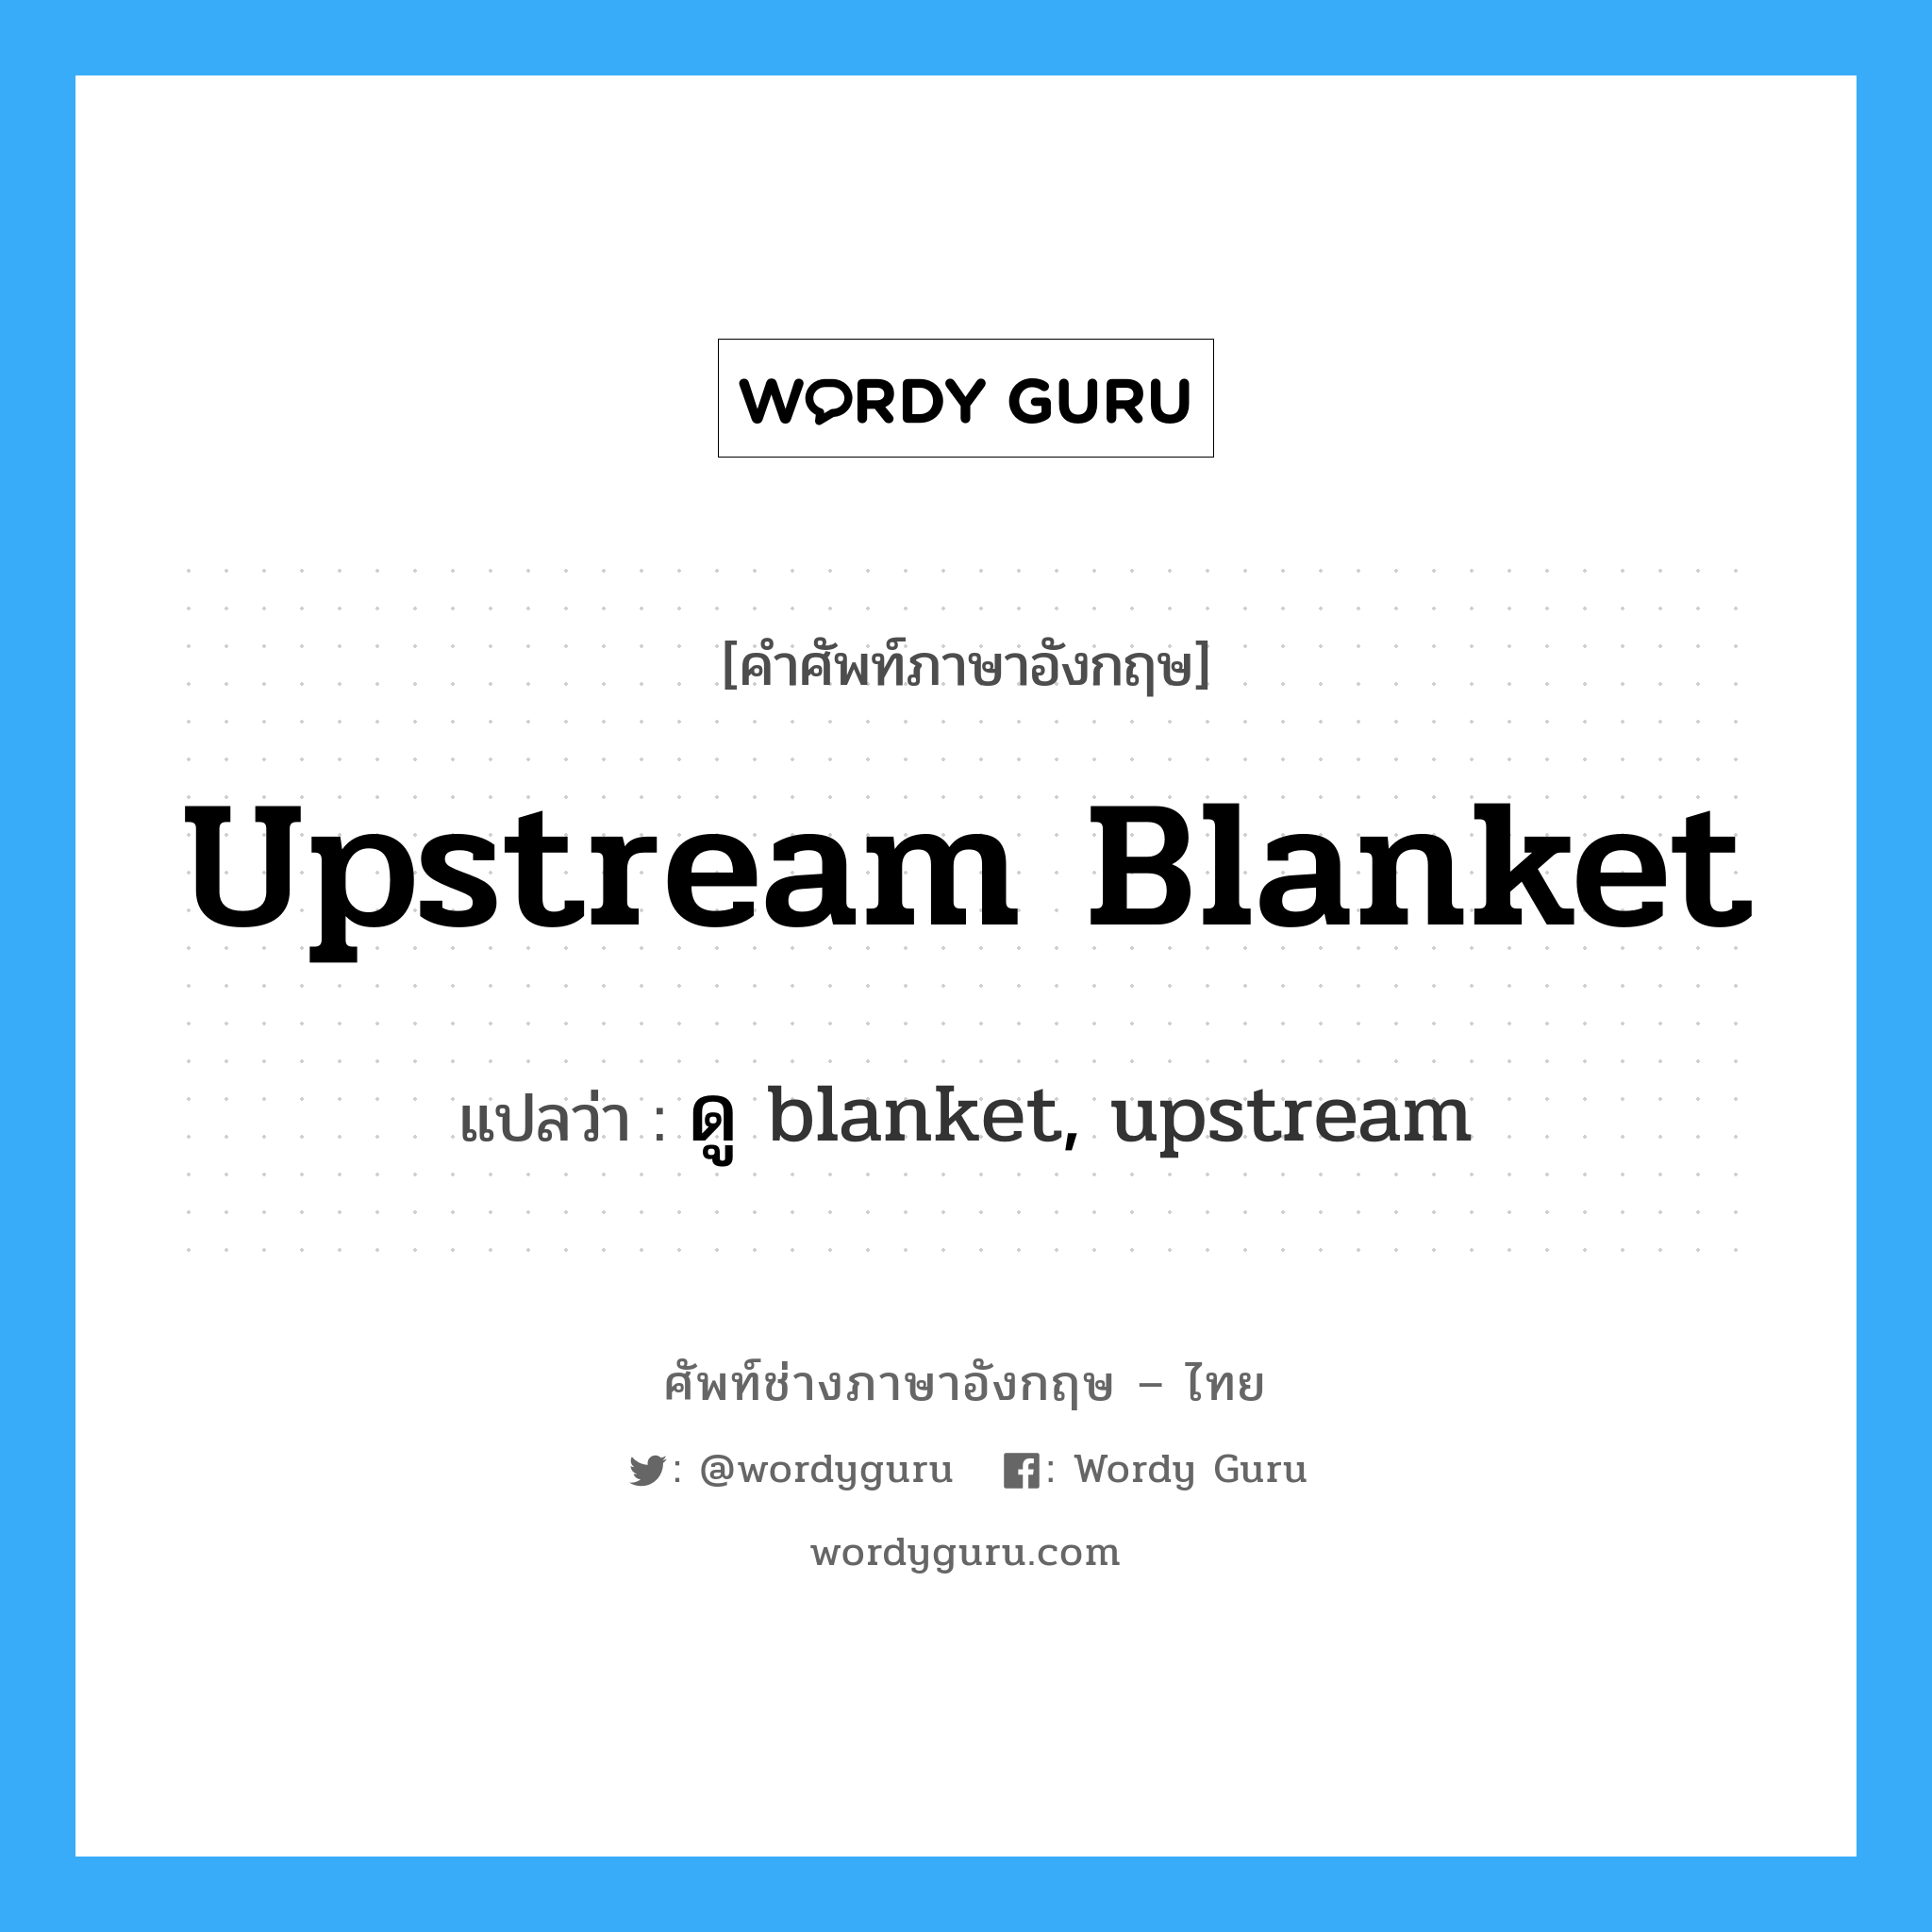 upstream blanket แปลว่า?, คำศัพท์ช่างภาษาอังกฤษ - ไทย upstream blanket คำศัพท์ภาษาอังกฤษ upstream blanket แปลว่า ดู blanket, upstream